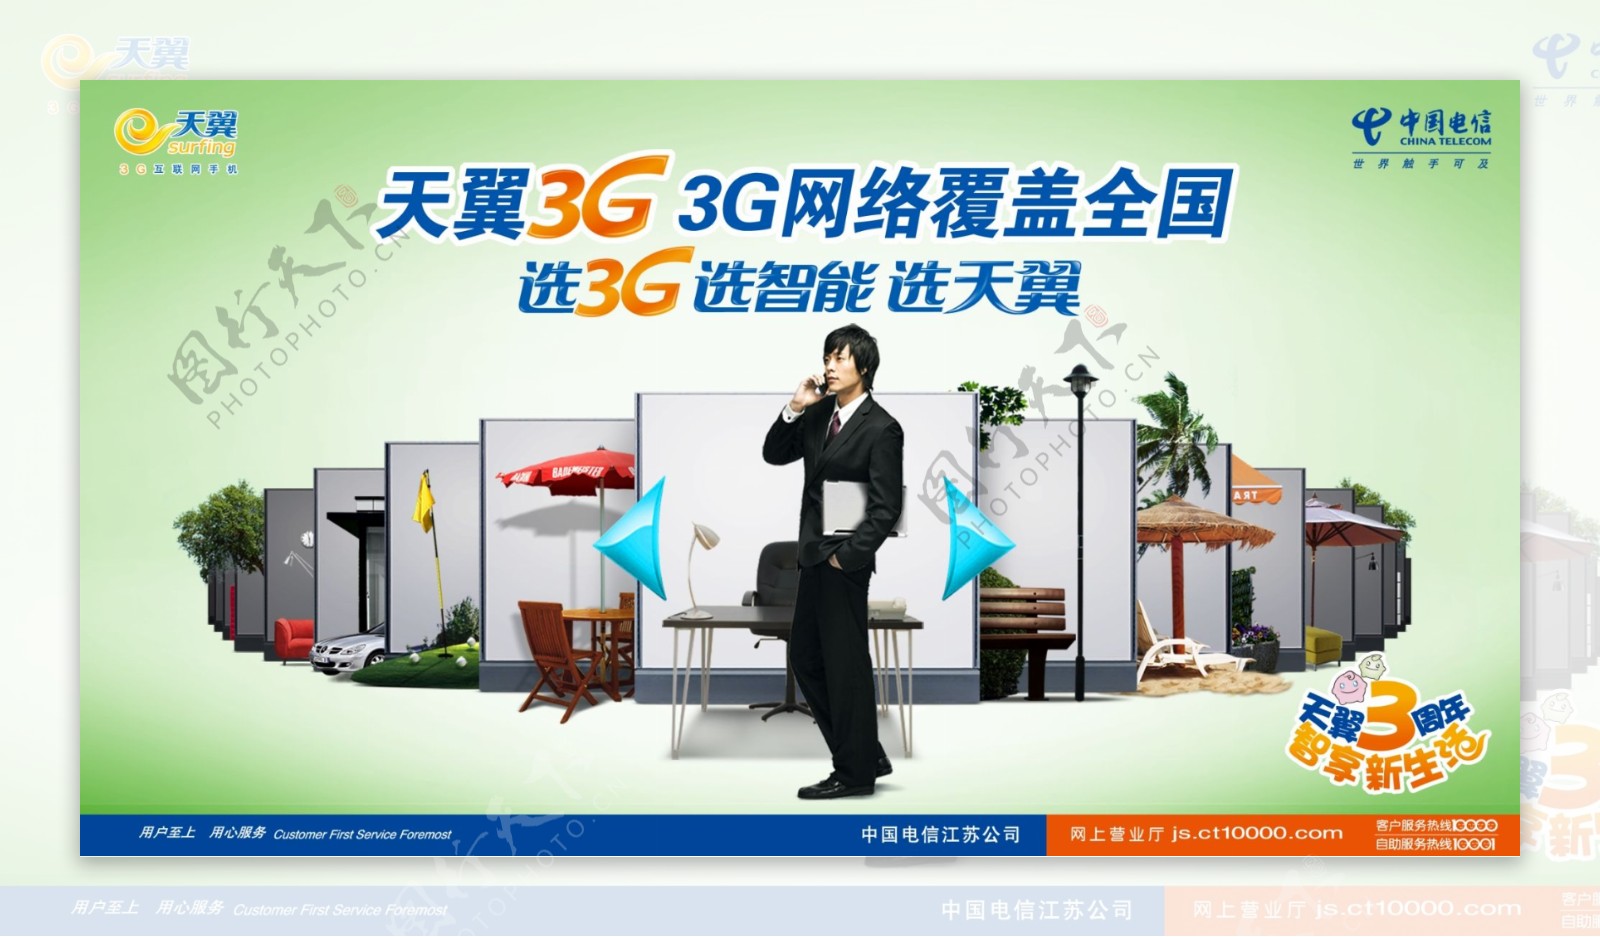 电信天翼3G网络覆盖全国广告图片